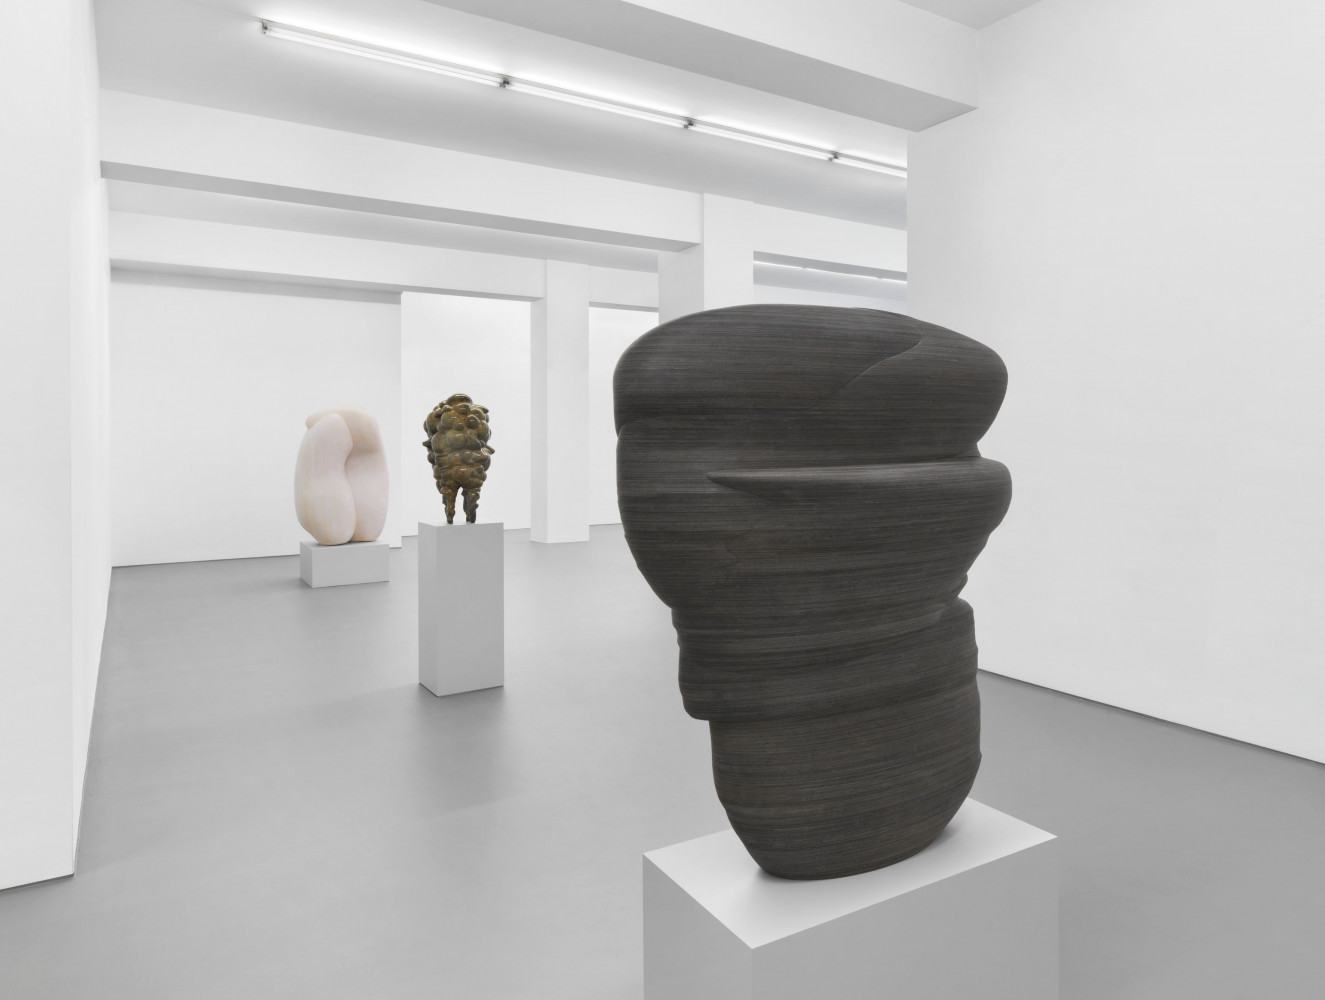 Tony Cragg, ‘Sculptures’, Installationsansicht, Buchmann Galerie, 2021